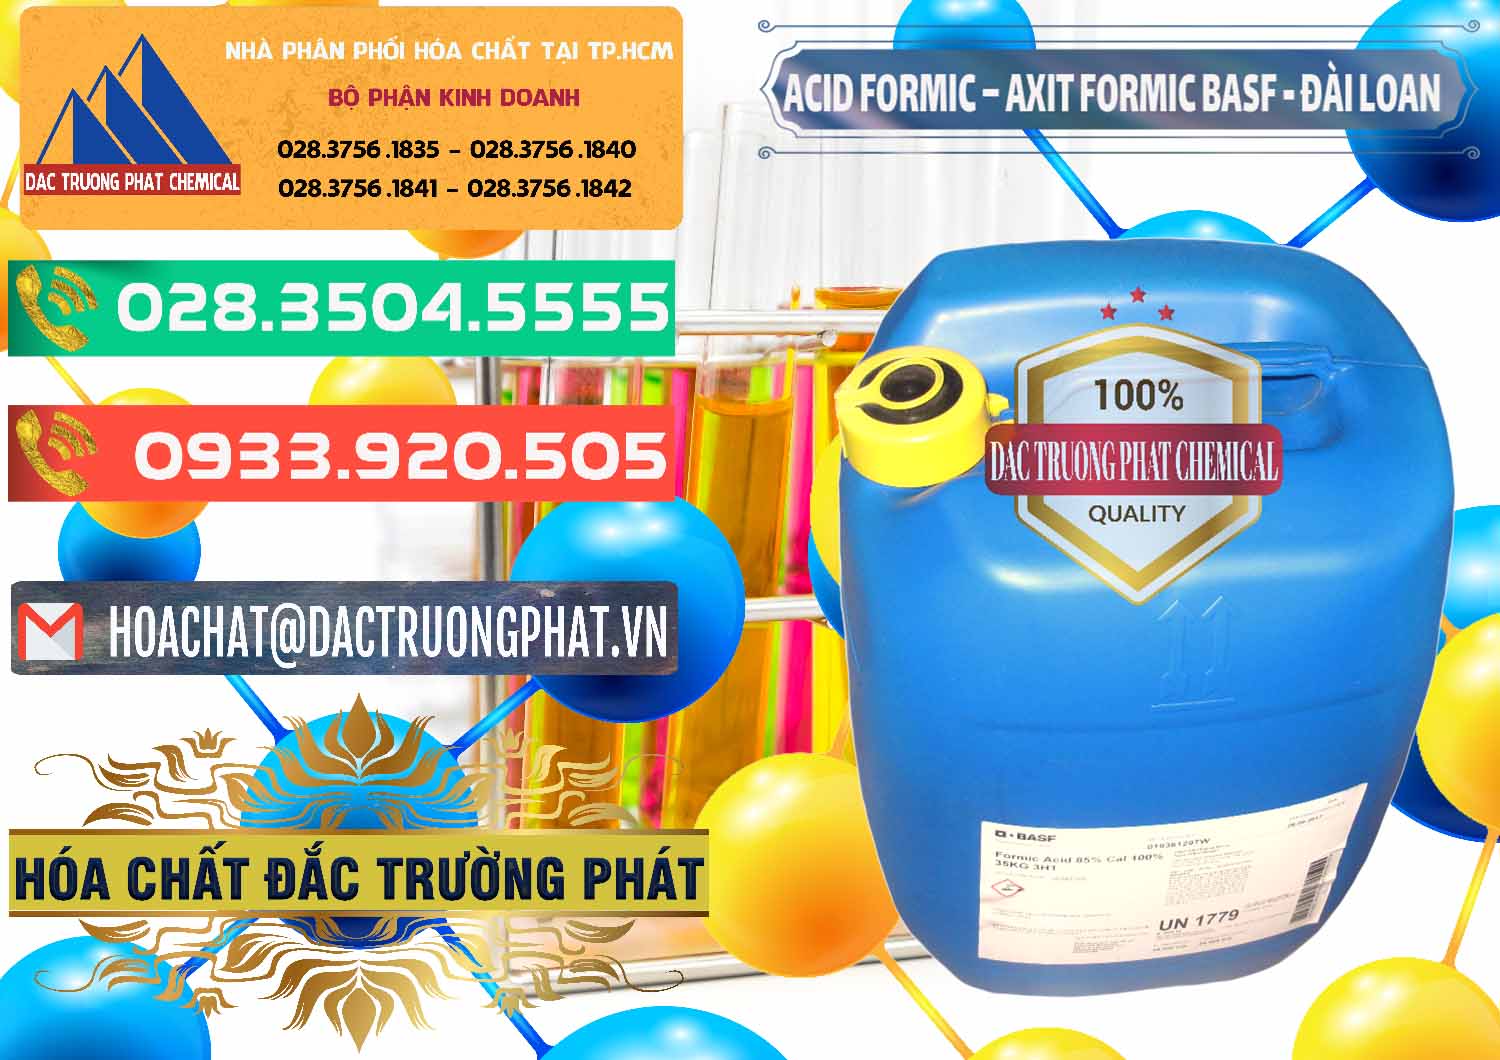 Cty chuyên kinh doanh _ bán Acid Formic - Axit Formic 85% BASF Đài Loan Taiwan - 0027 - Công ty kinh doanh và phân phối hóa chất tại TP.HCM - congtyhoachat.com.vn